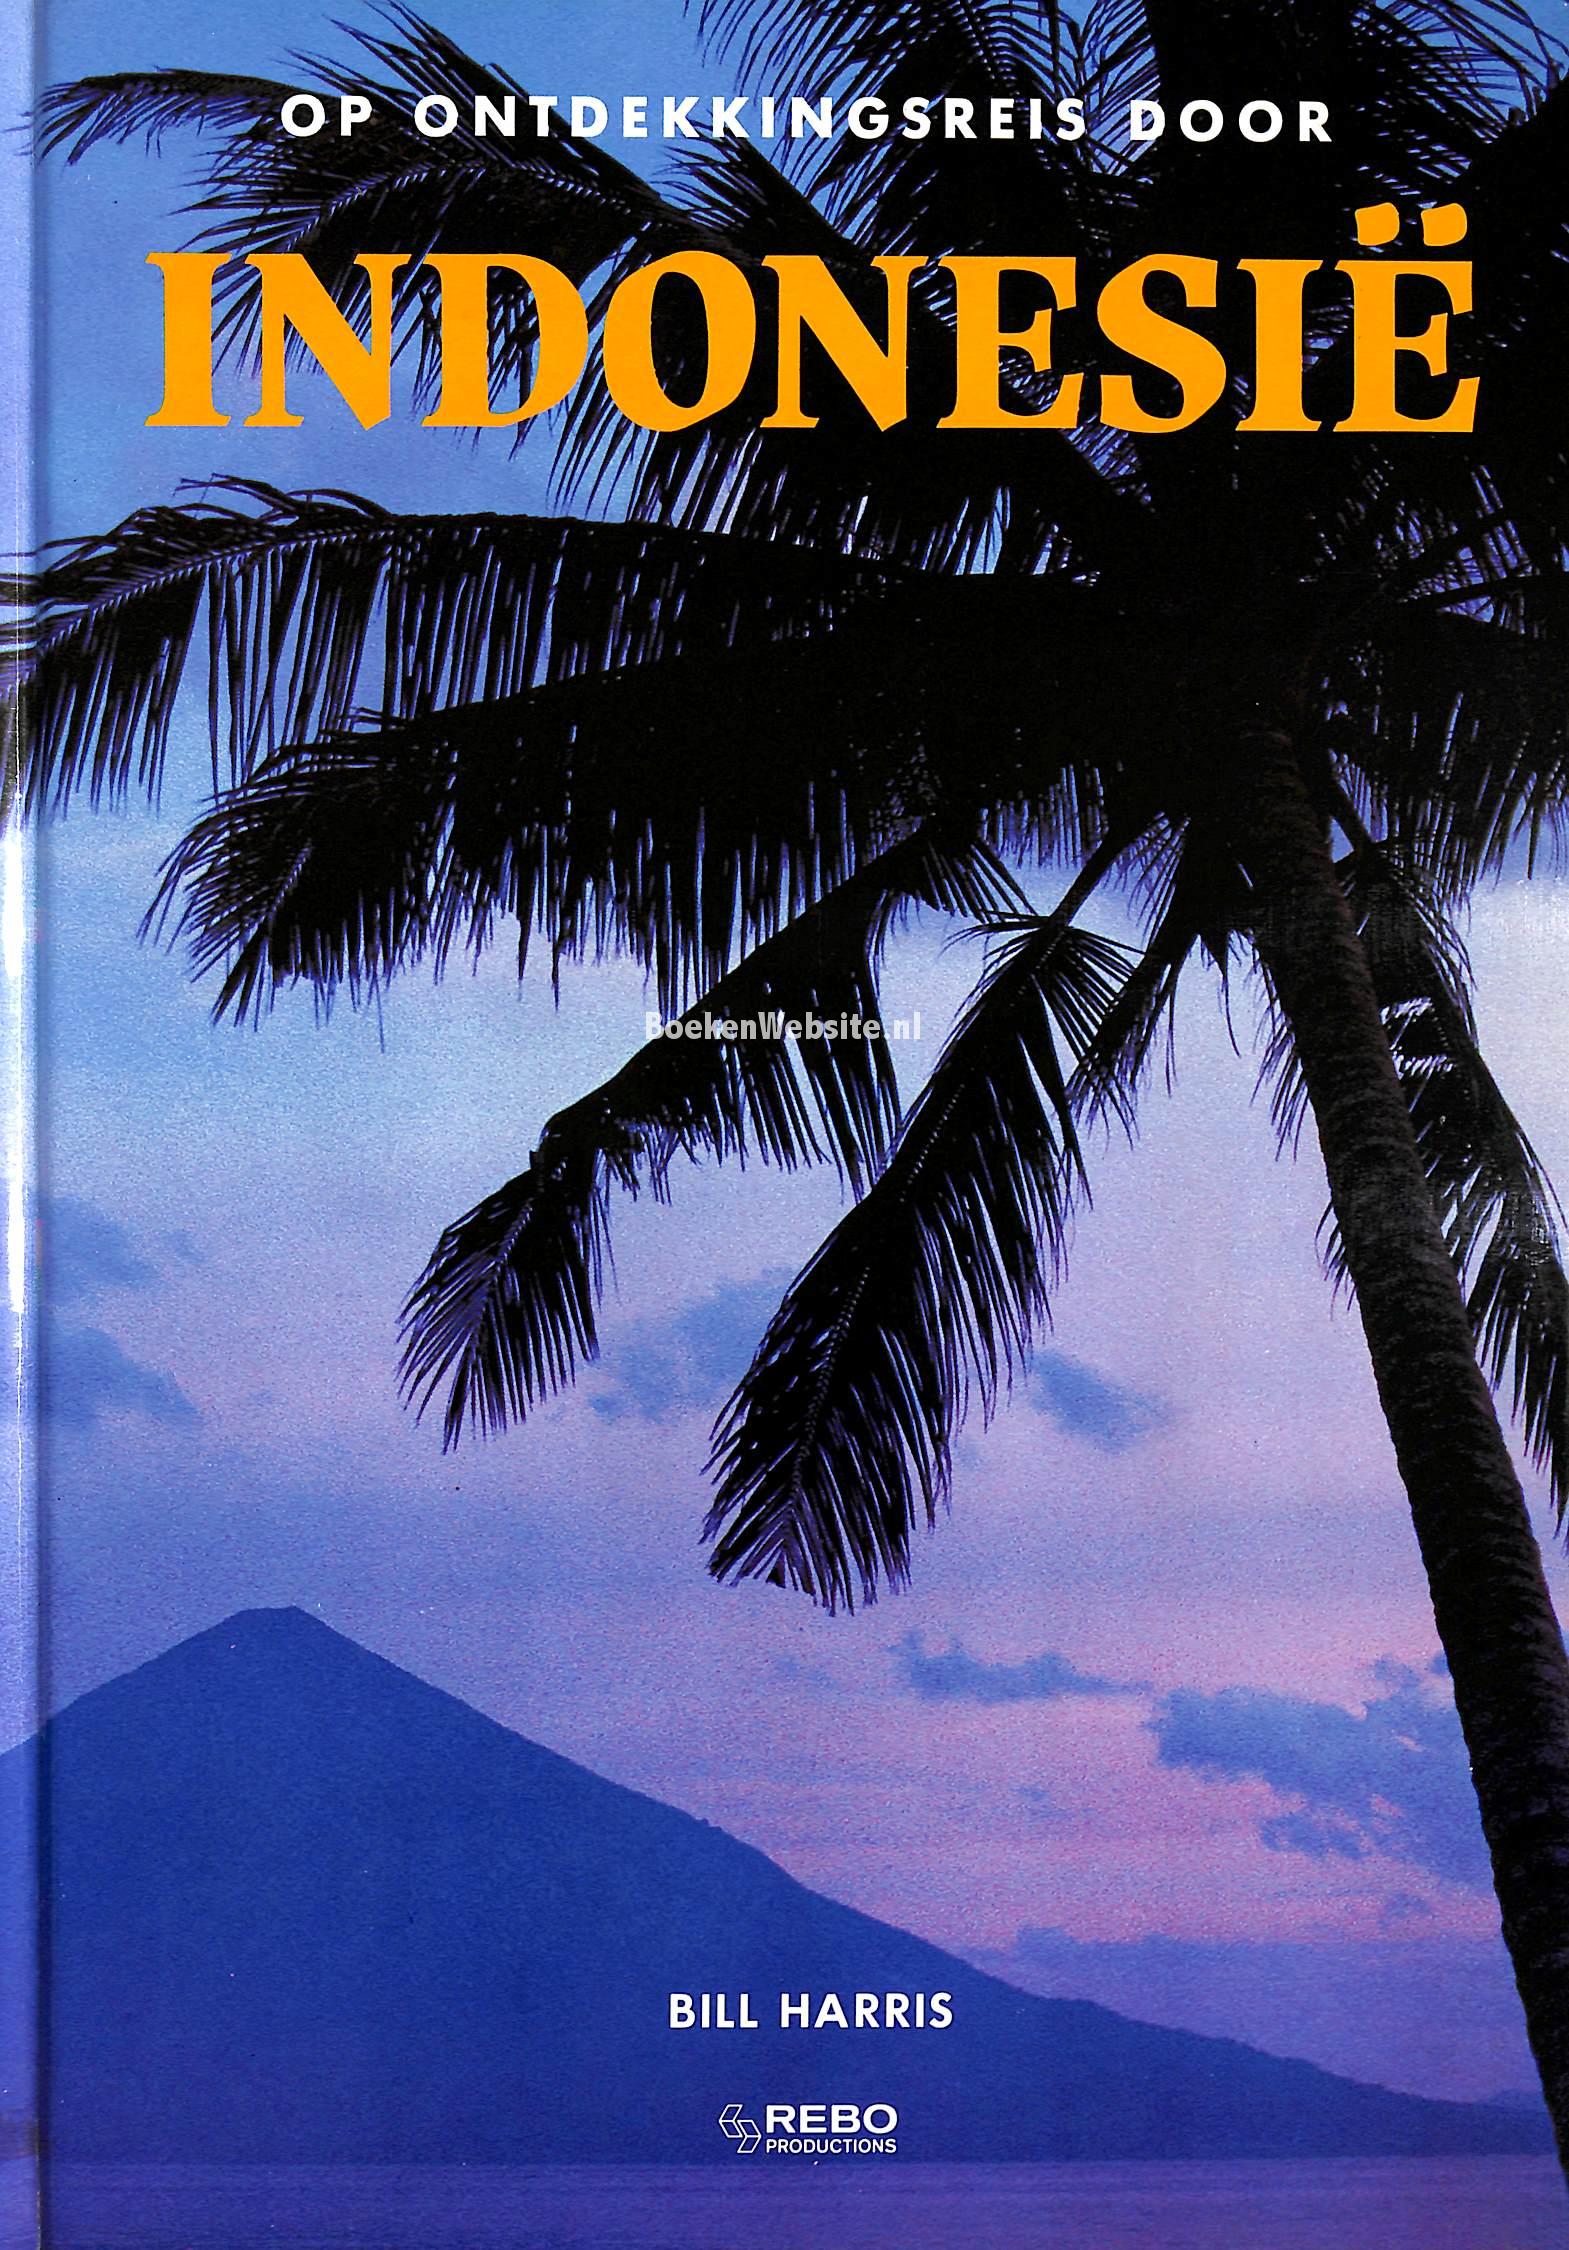 Op ontdekkingsreis door Indonesië